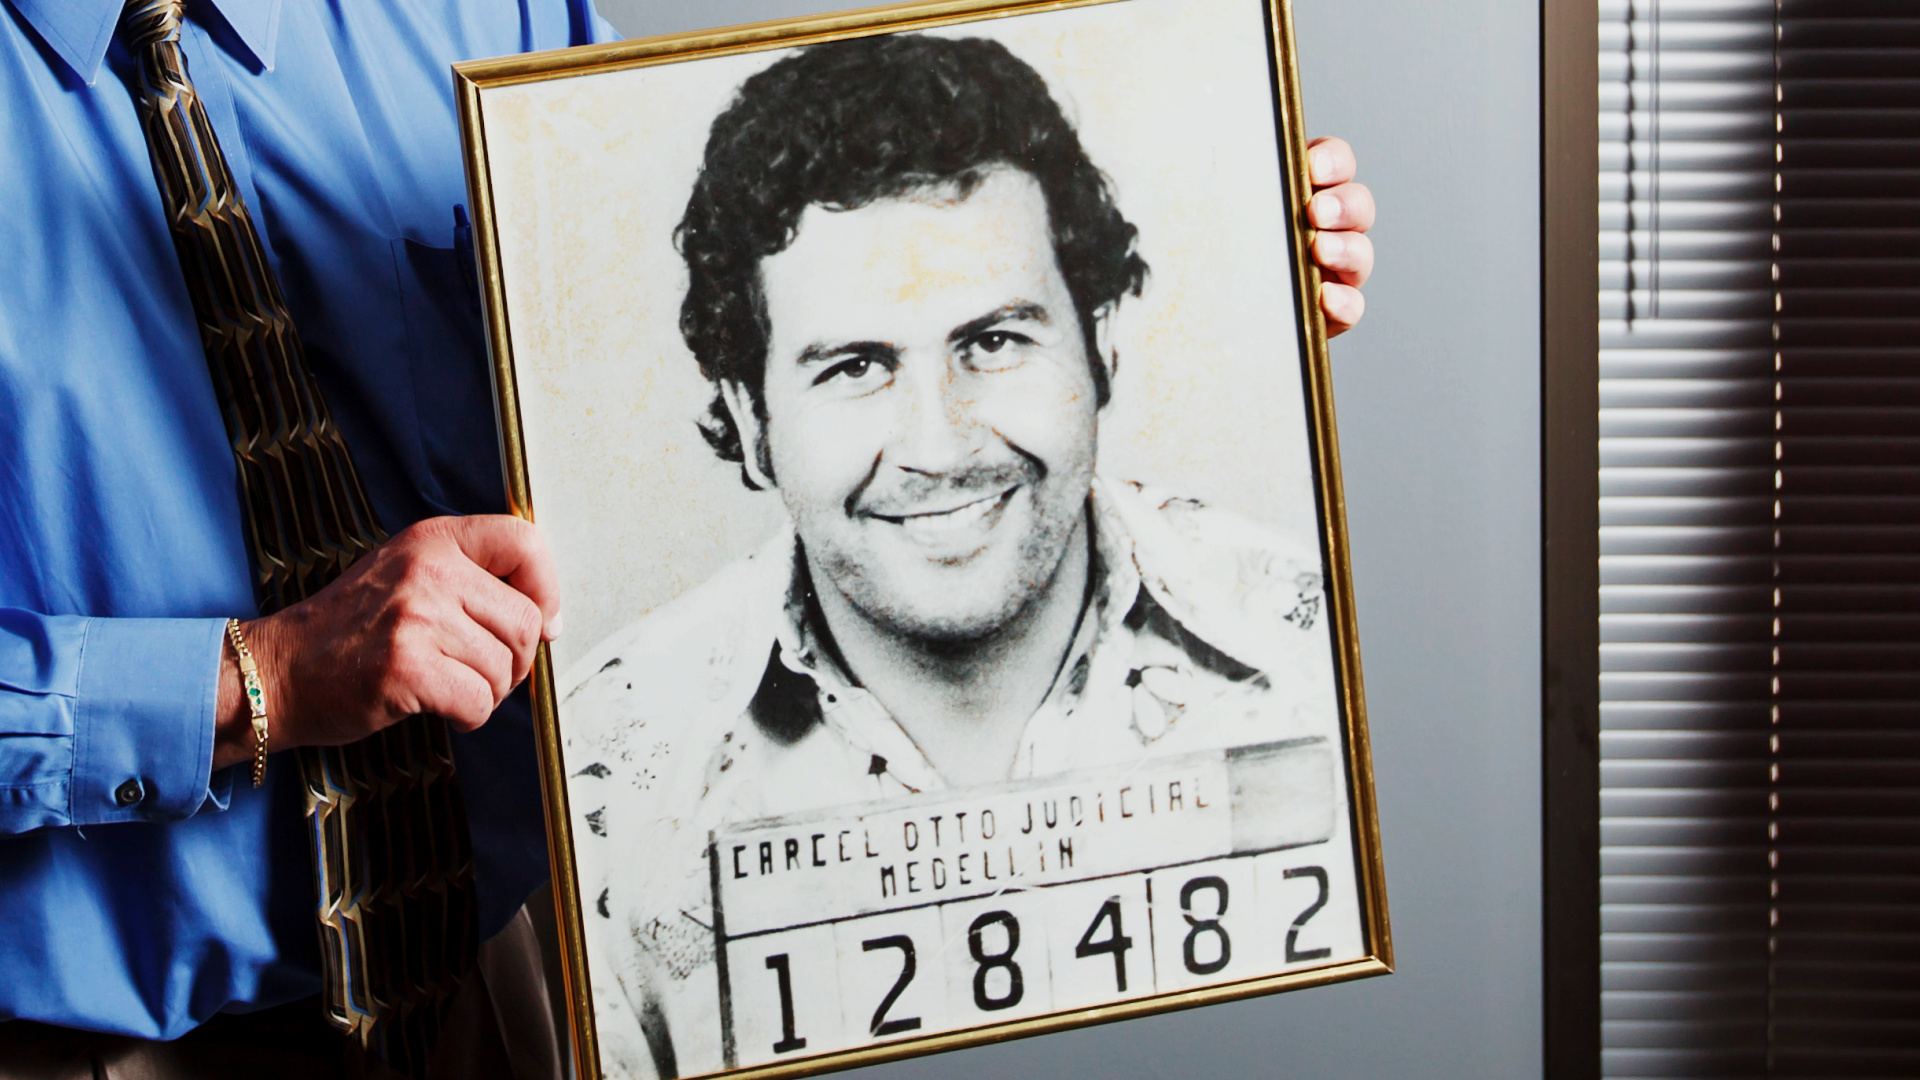 Kurioses Urteil der europäischen Justiz zu Pablo Escobar mehr als 30 Jahre nach seinem Tod